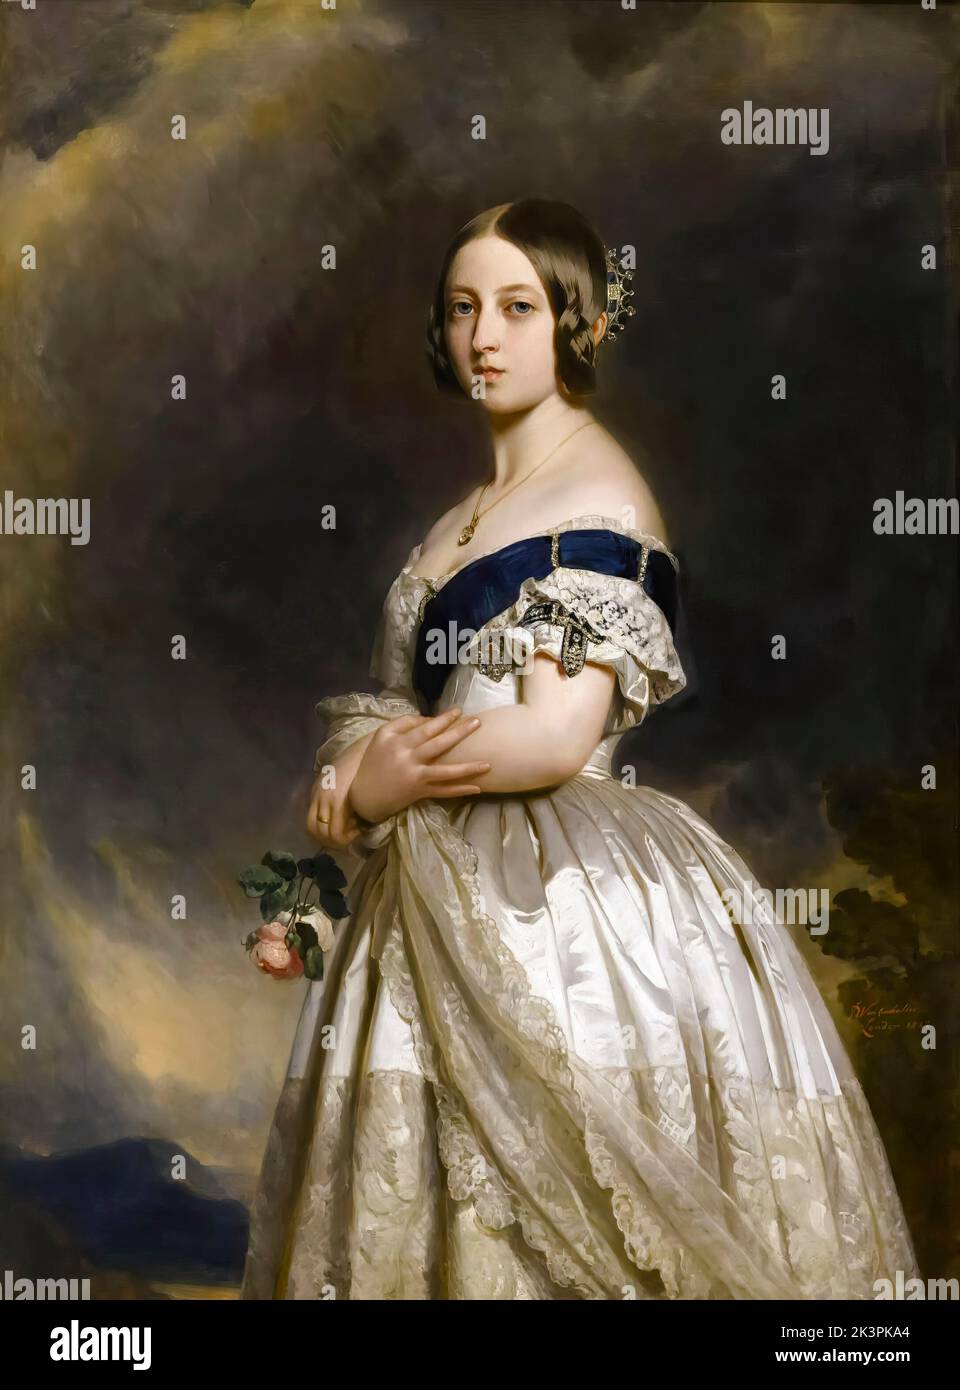 Königin Victoria (1819-1901) des Vereinigten Königreichs von Großbritannien und Irland (1837-1901) als junge Frau 1837, Porträt in Öl auf Leinwand von Franz Xaver Winterhalter, 1842 Stockfoto